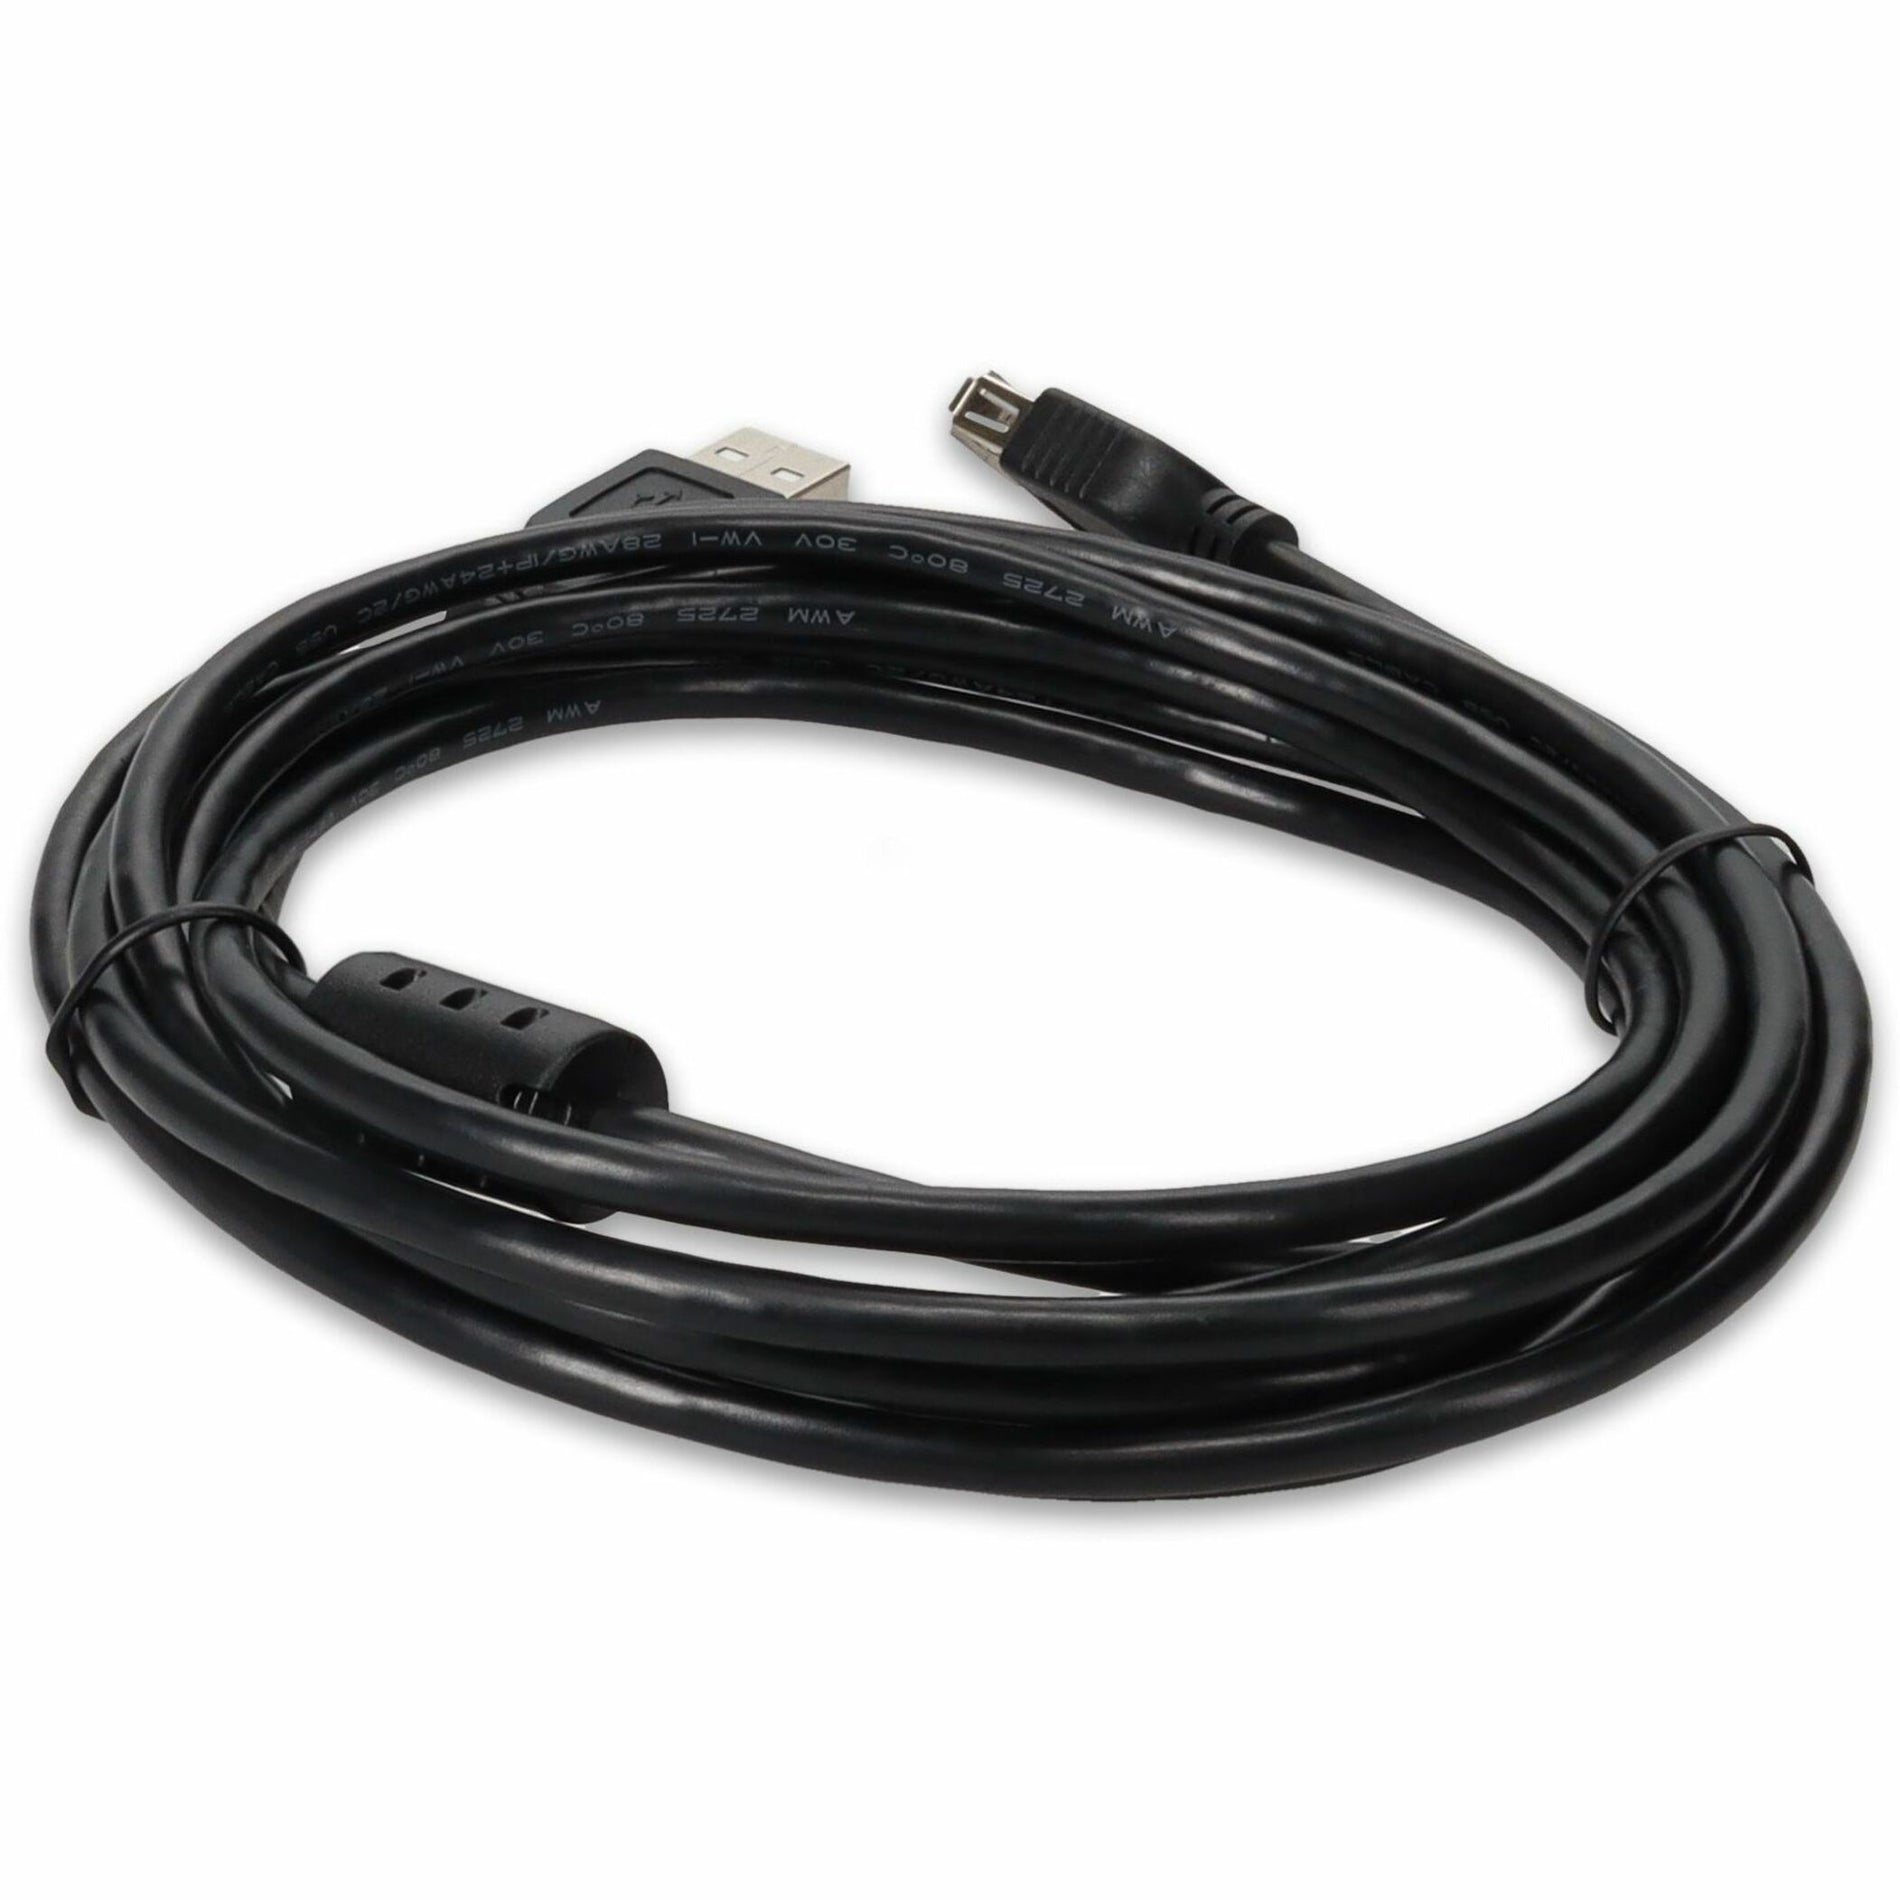 ブランド名: AddOn   USBEXTAA10FB 10ft (3M) USB 2.0 A to A Extension Cable - Male to Female Black  USBEXTAA10FB 10ft (3M) USB 2.0 A to A エクステンションケーブル - メス-オス ブラック